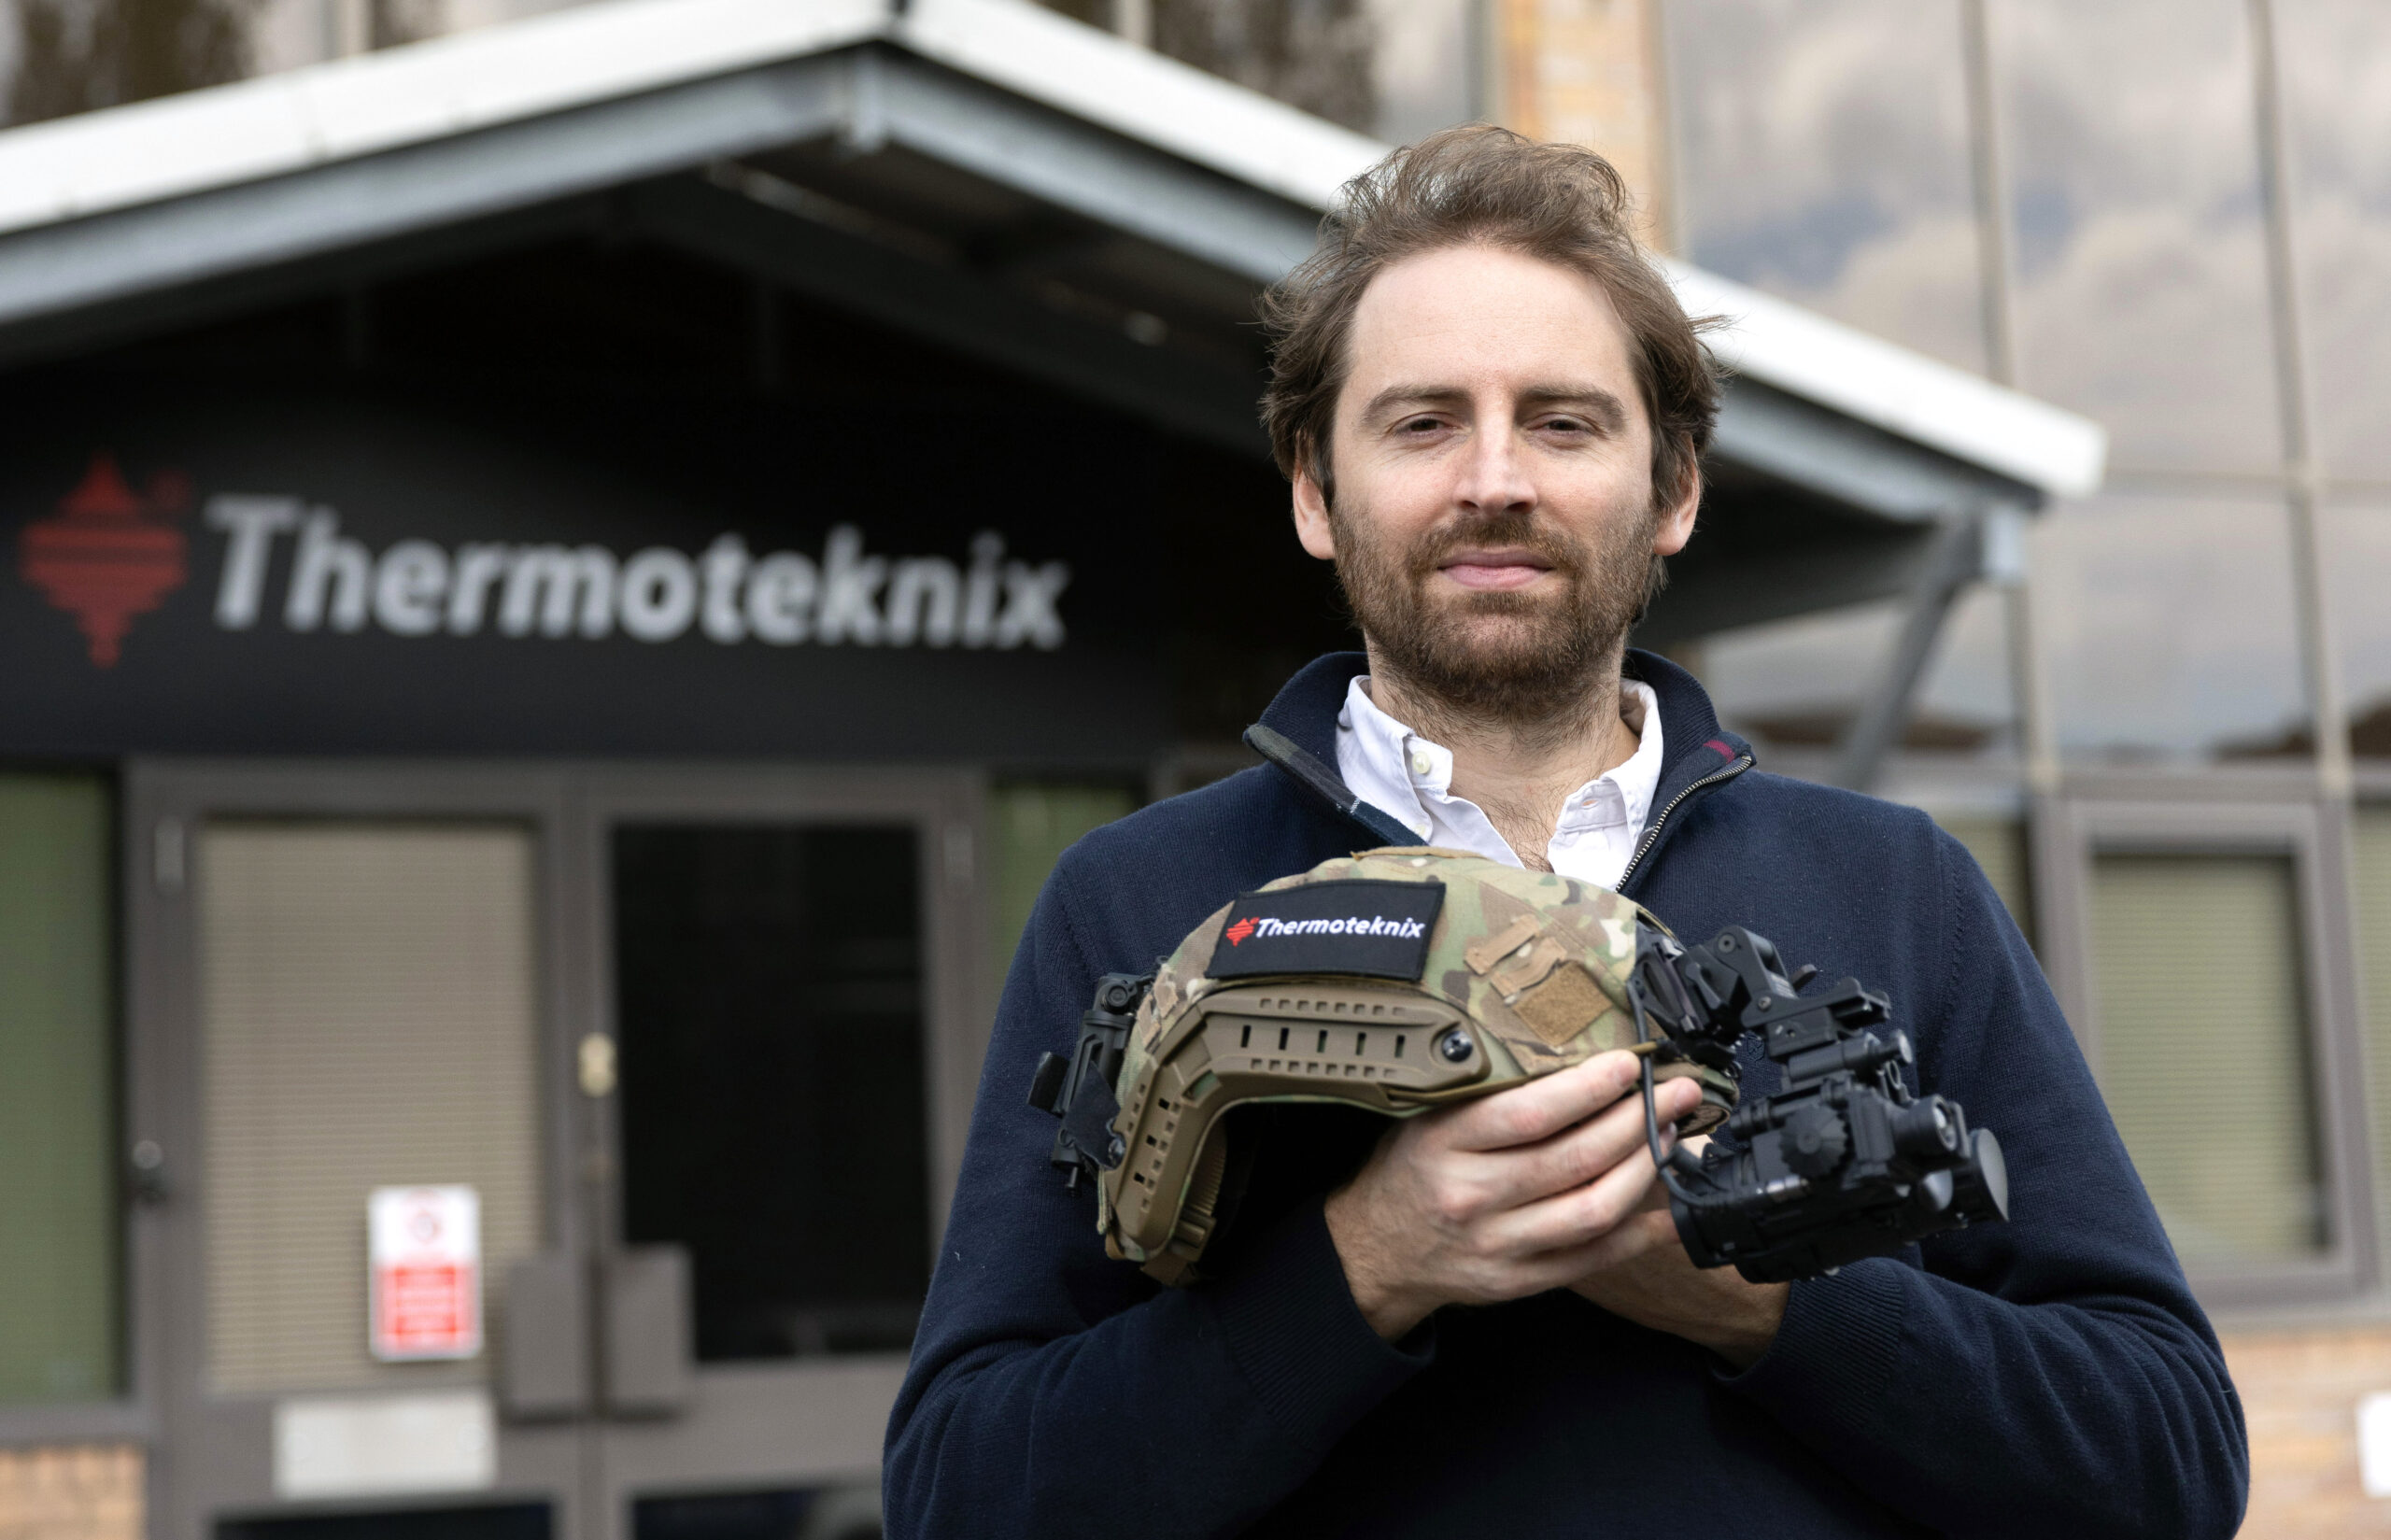 Royal Award für Thermoteknix: Betriebsleiter Max Salisbury feiert den Gewinn eines fünften Royal Award.